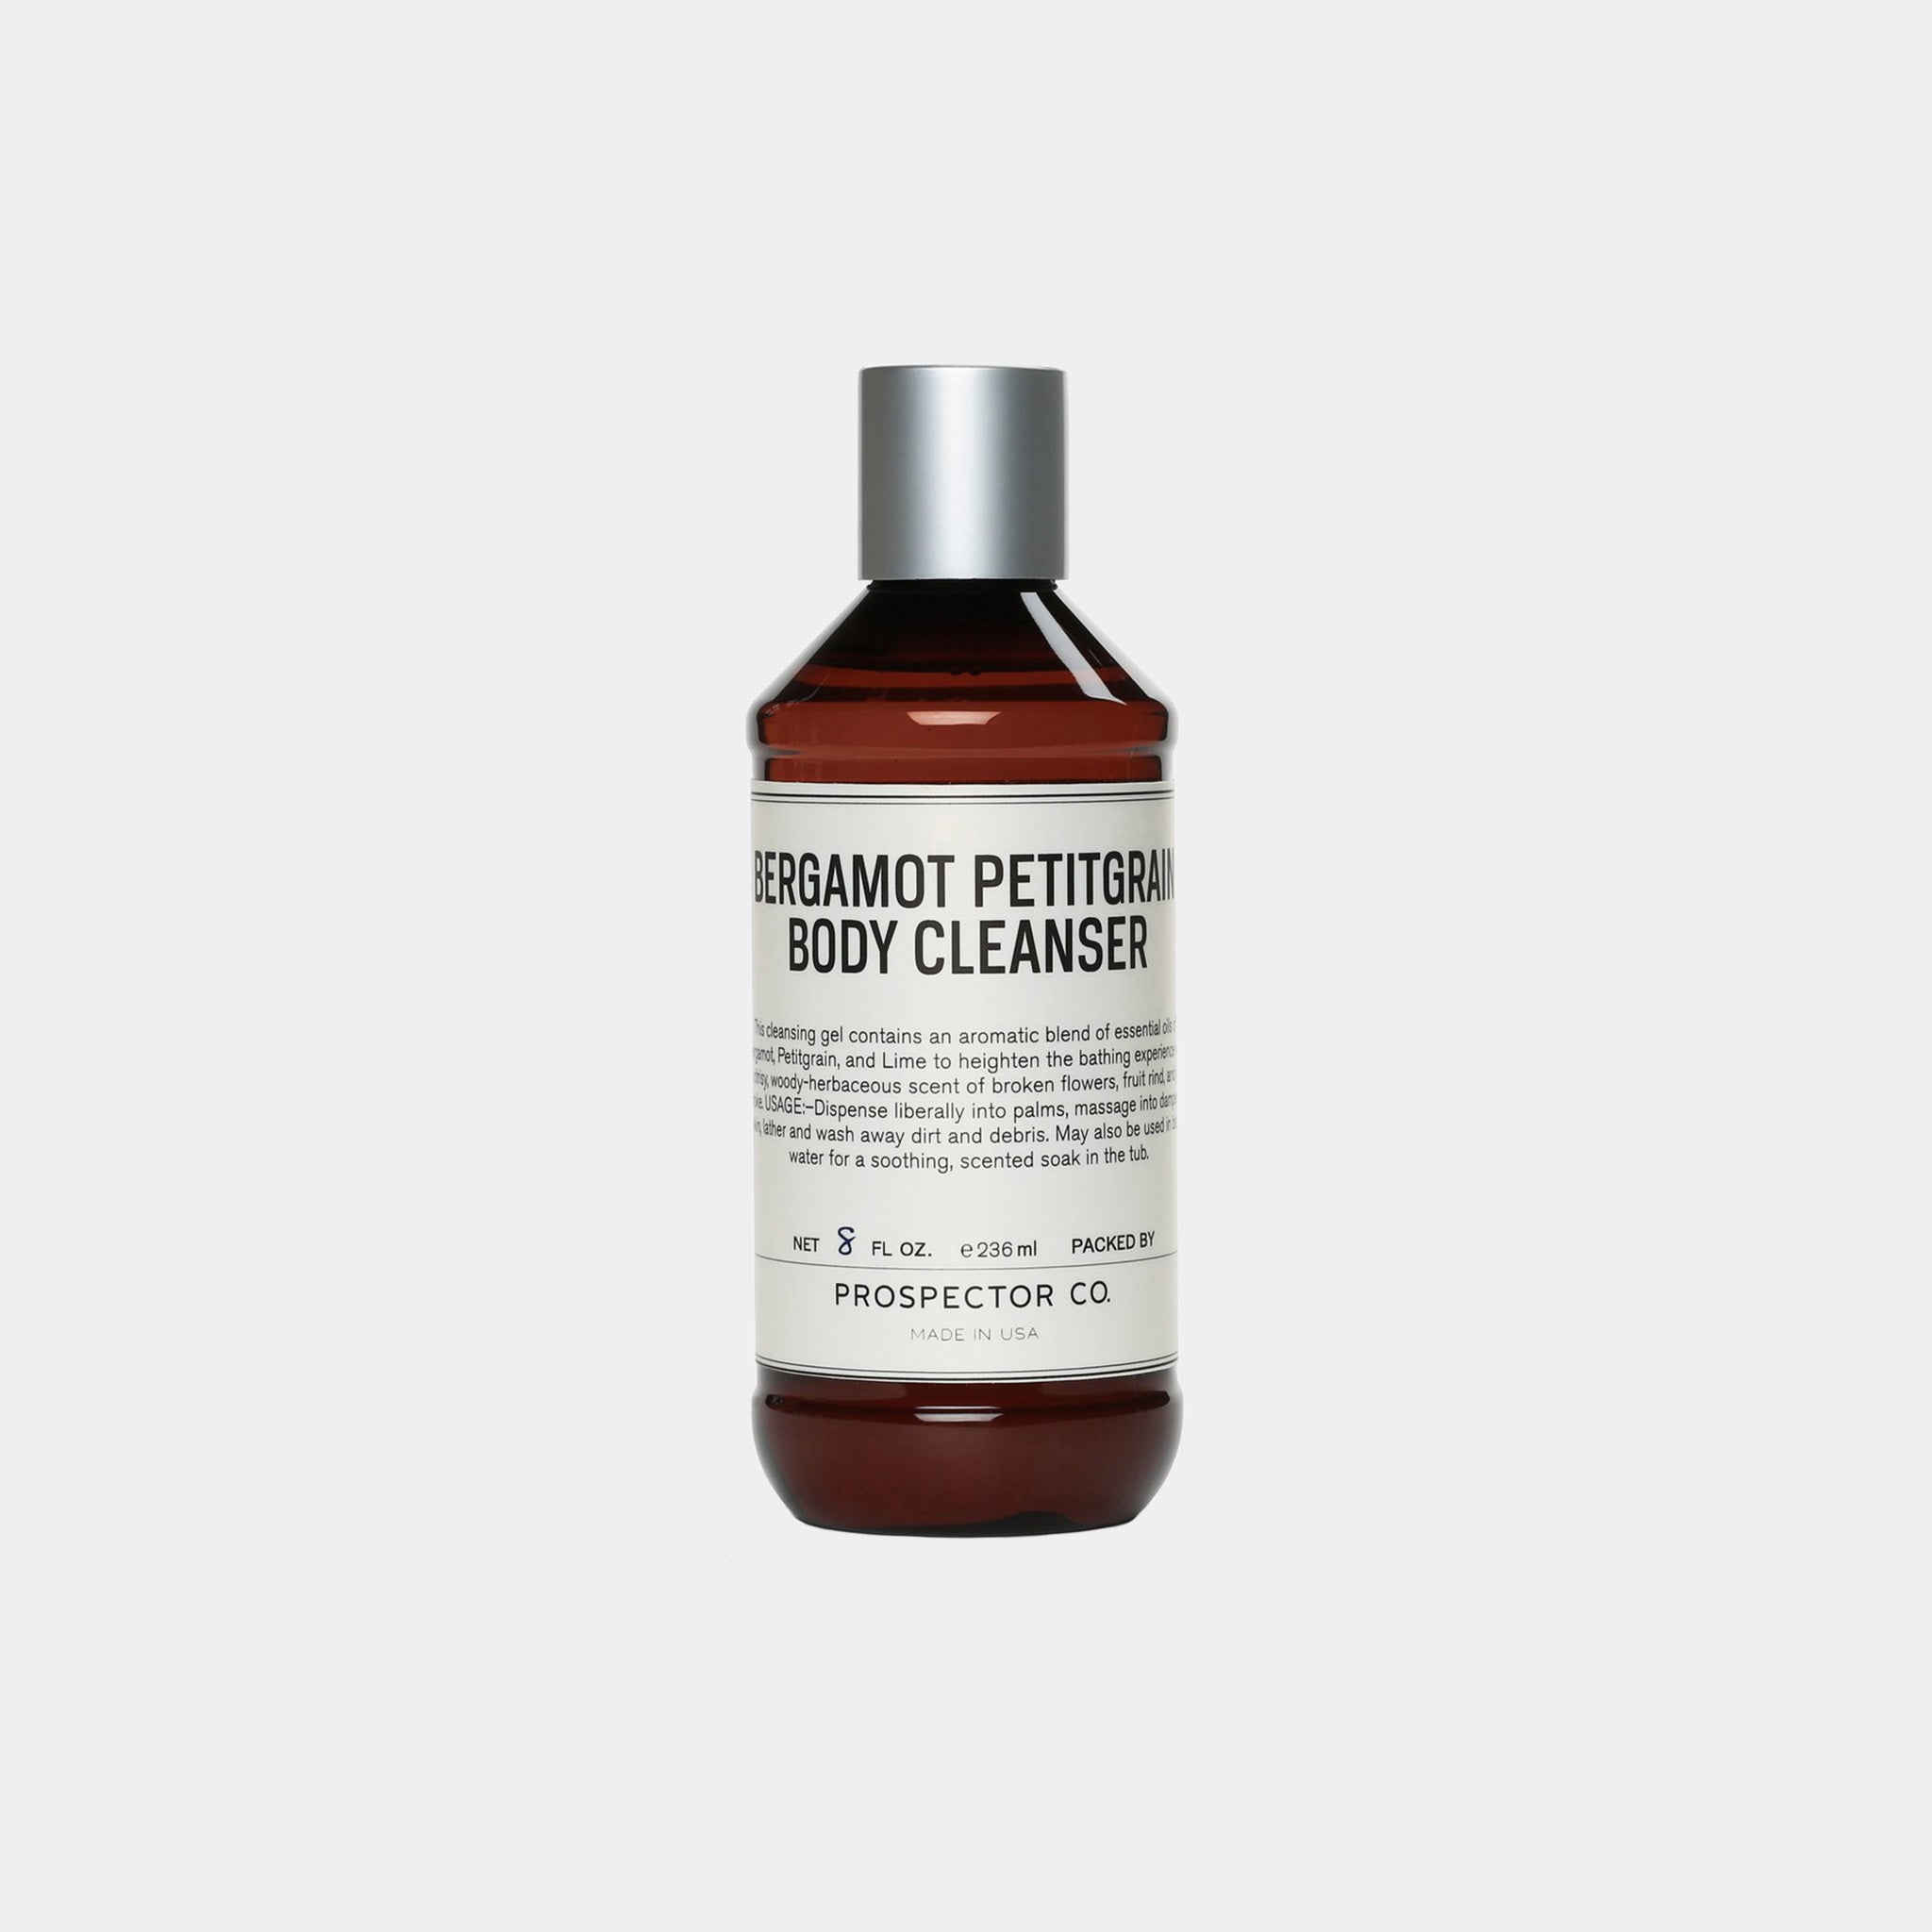 Bergamot Petitgrain Body Cleanser